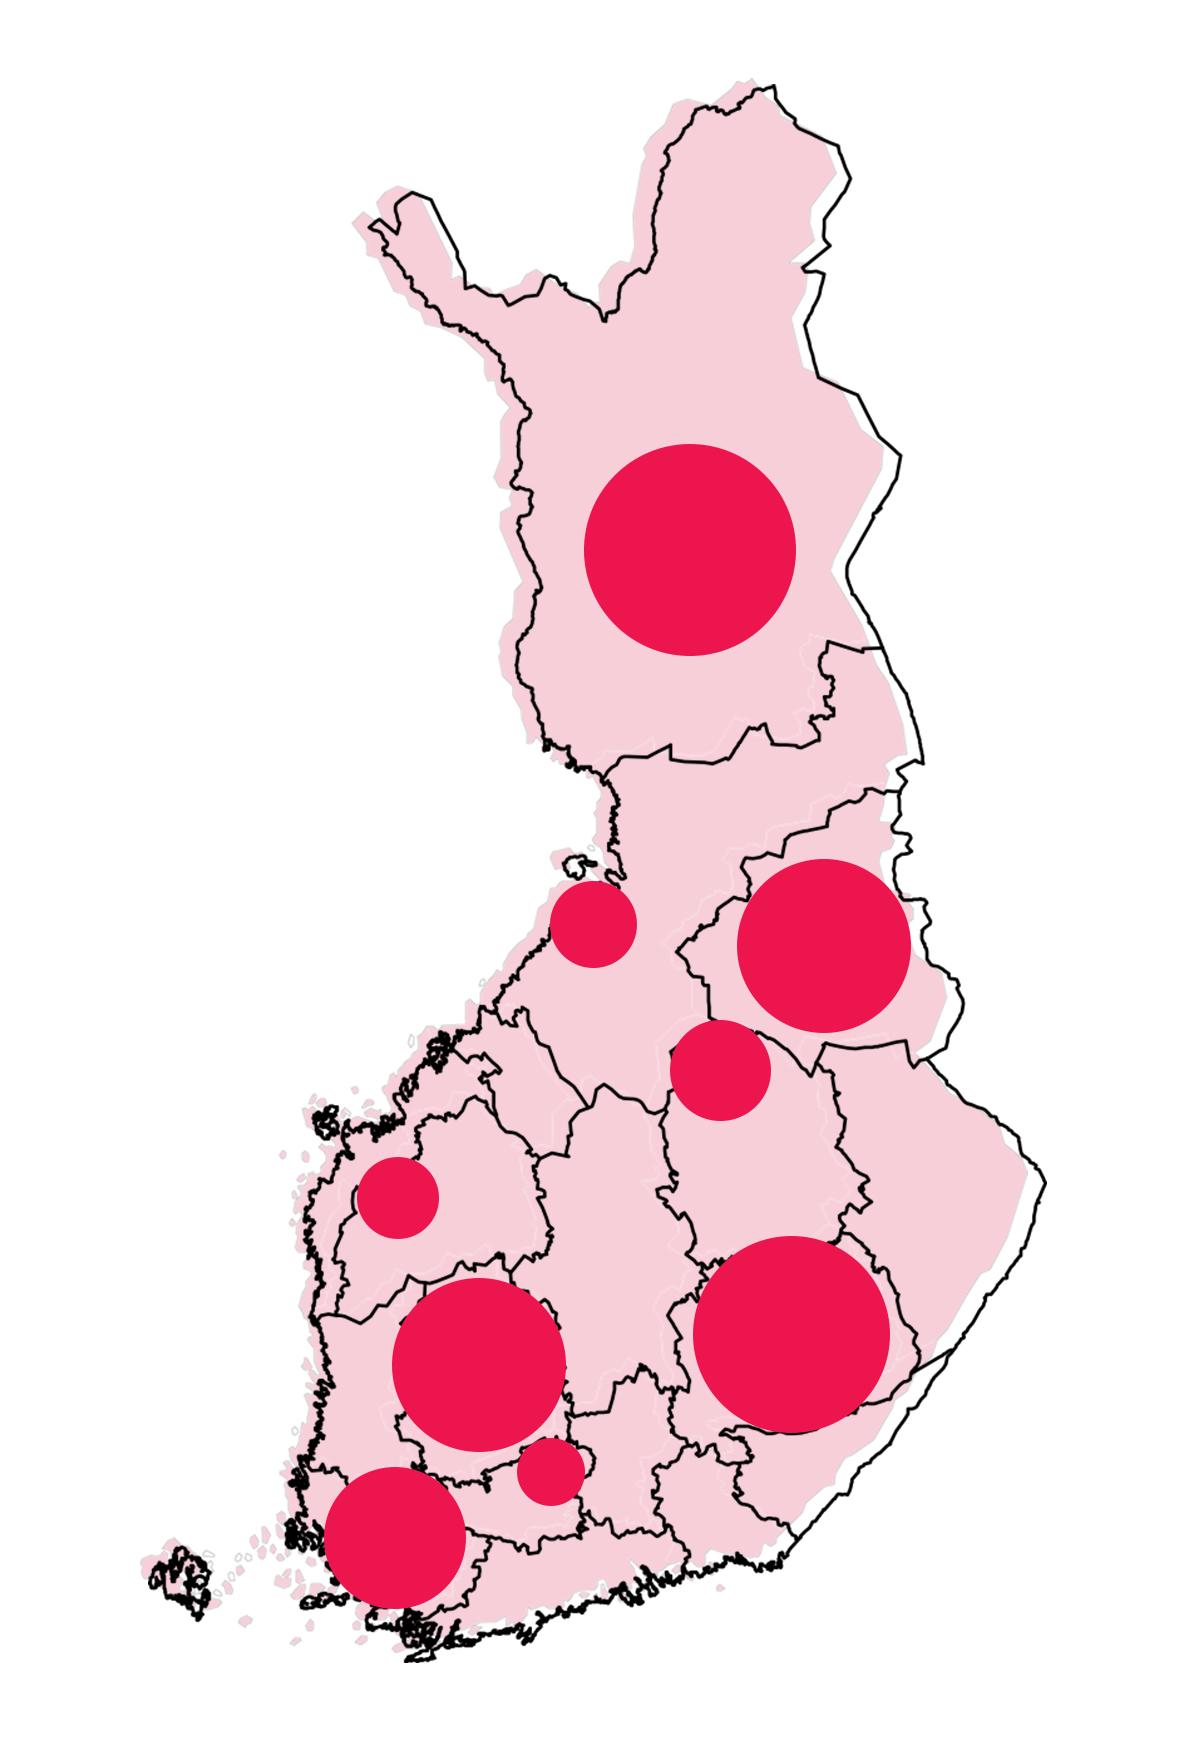 Suomen kartta, johon on pallolla merkitty yhteistyöalueet, jotka ovat Hämeenlinna, Seinäjoki ja Ilmajoki, Ylä-Savon seutukunta, Raahen seutukunta sekä maakunnista Etelä-Savo, Kainuu, Lappi, Pirkanmaa ja Varsinais-Suomi.